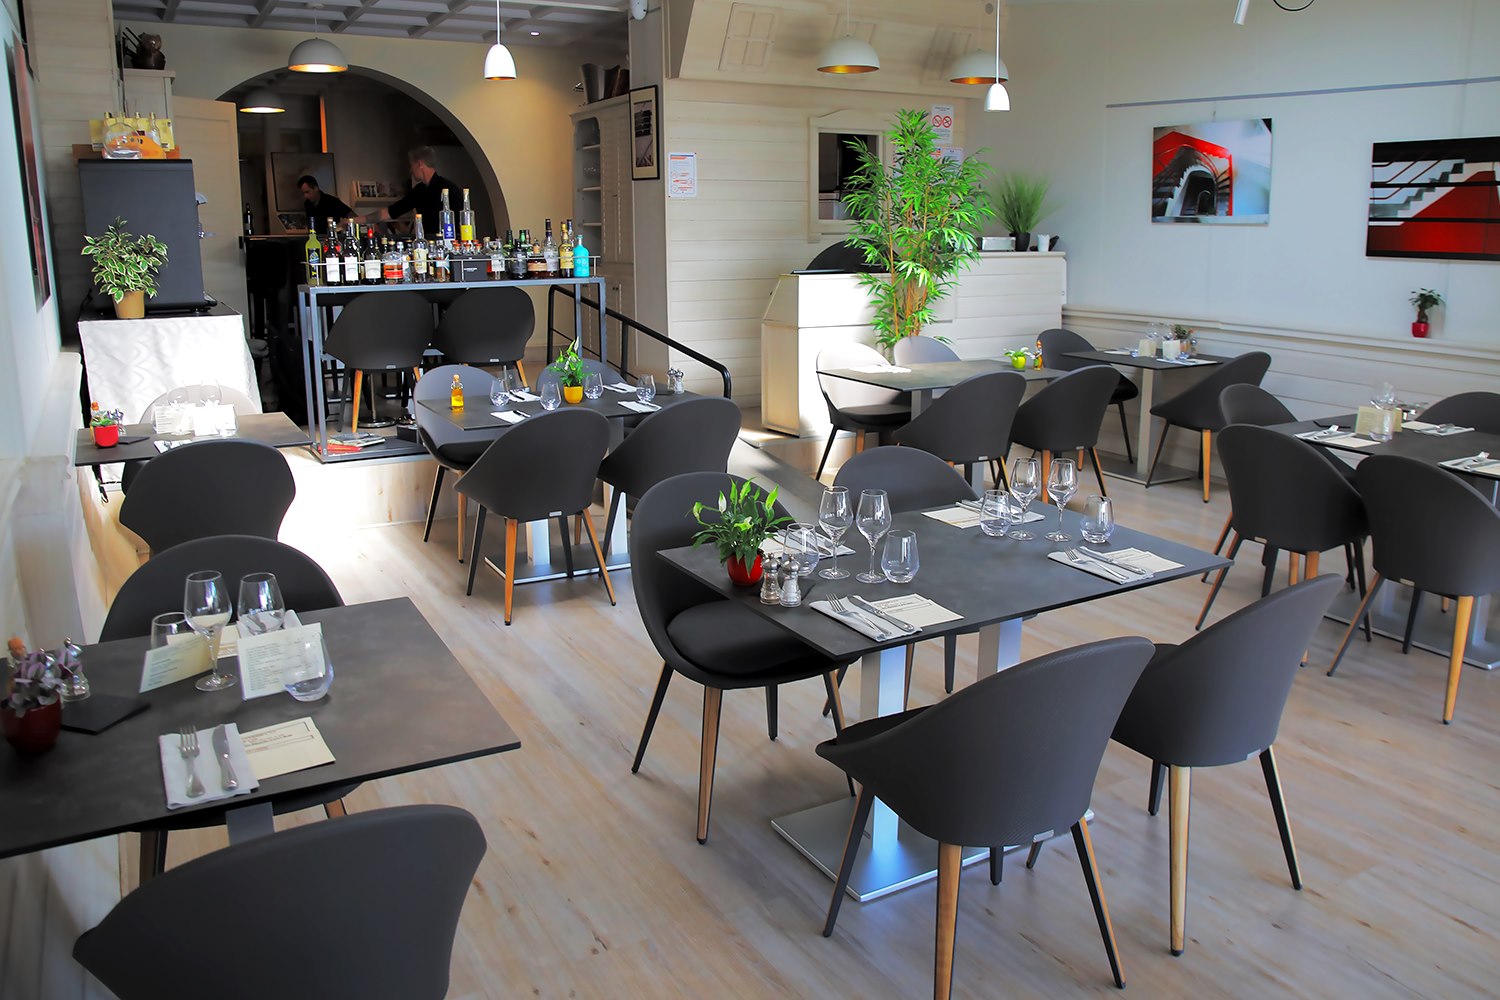 Salle du restaurant "Le Saint Georges" à Palavas-les-Flots dont le Chef est Paul COURTAUX.